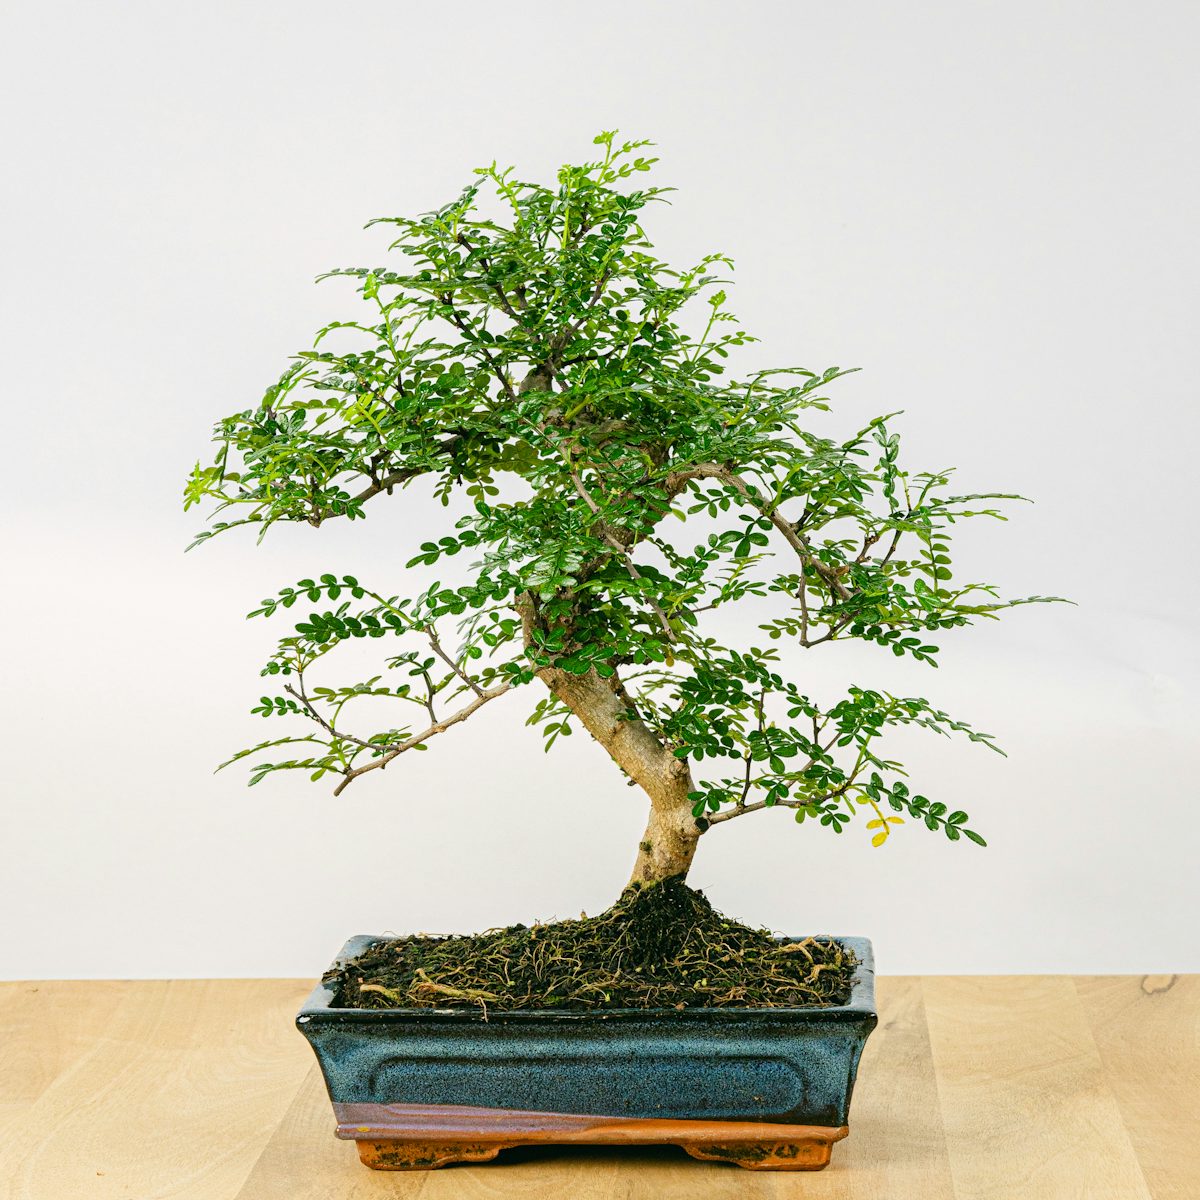 Bonsai Zanthoxylum Piperitum 10 anos